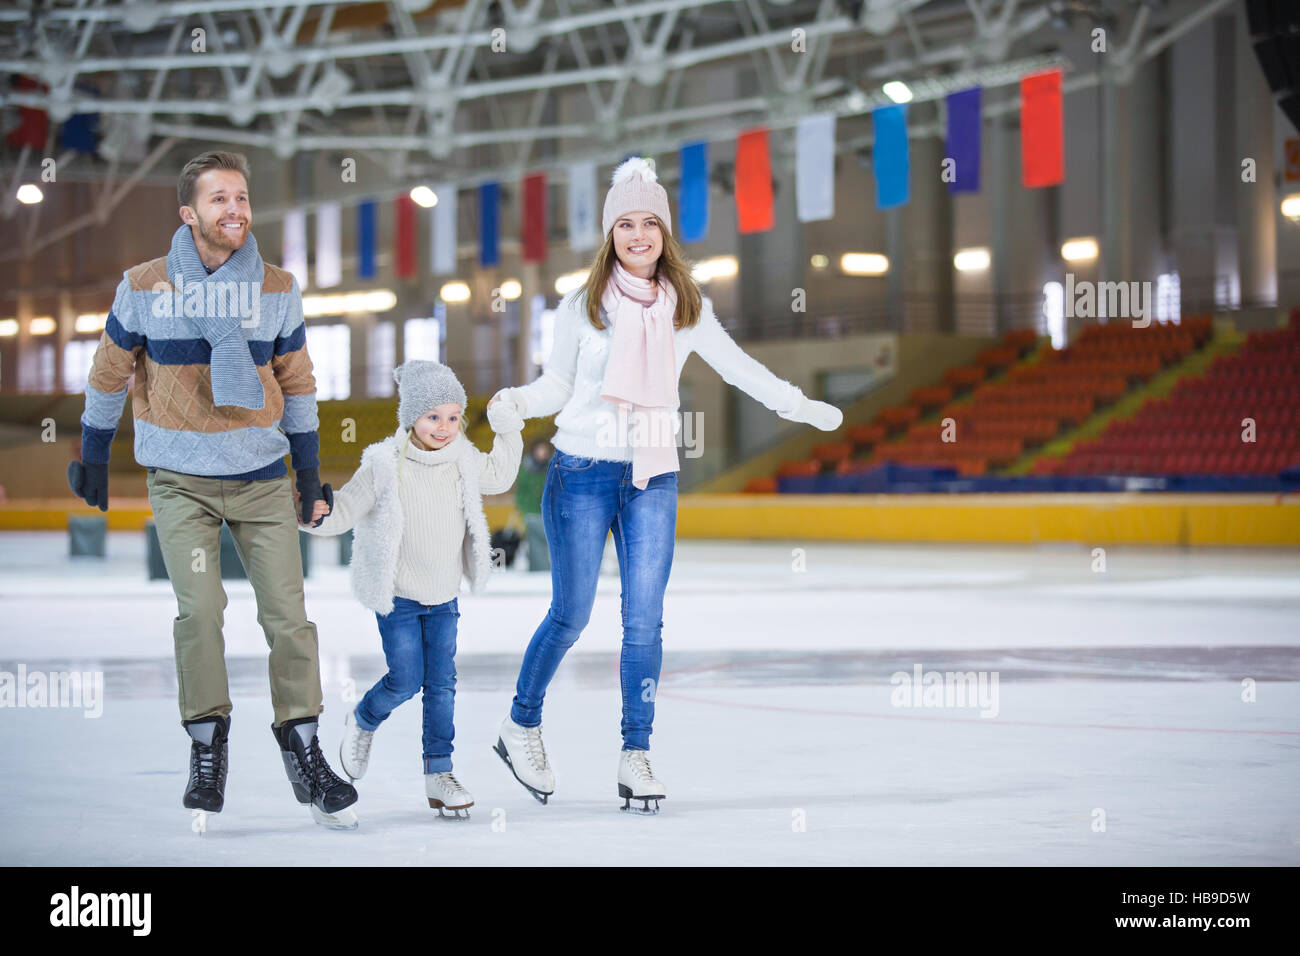 At ice-skating rink Stock Photo